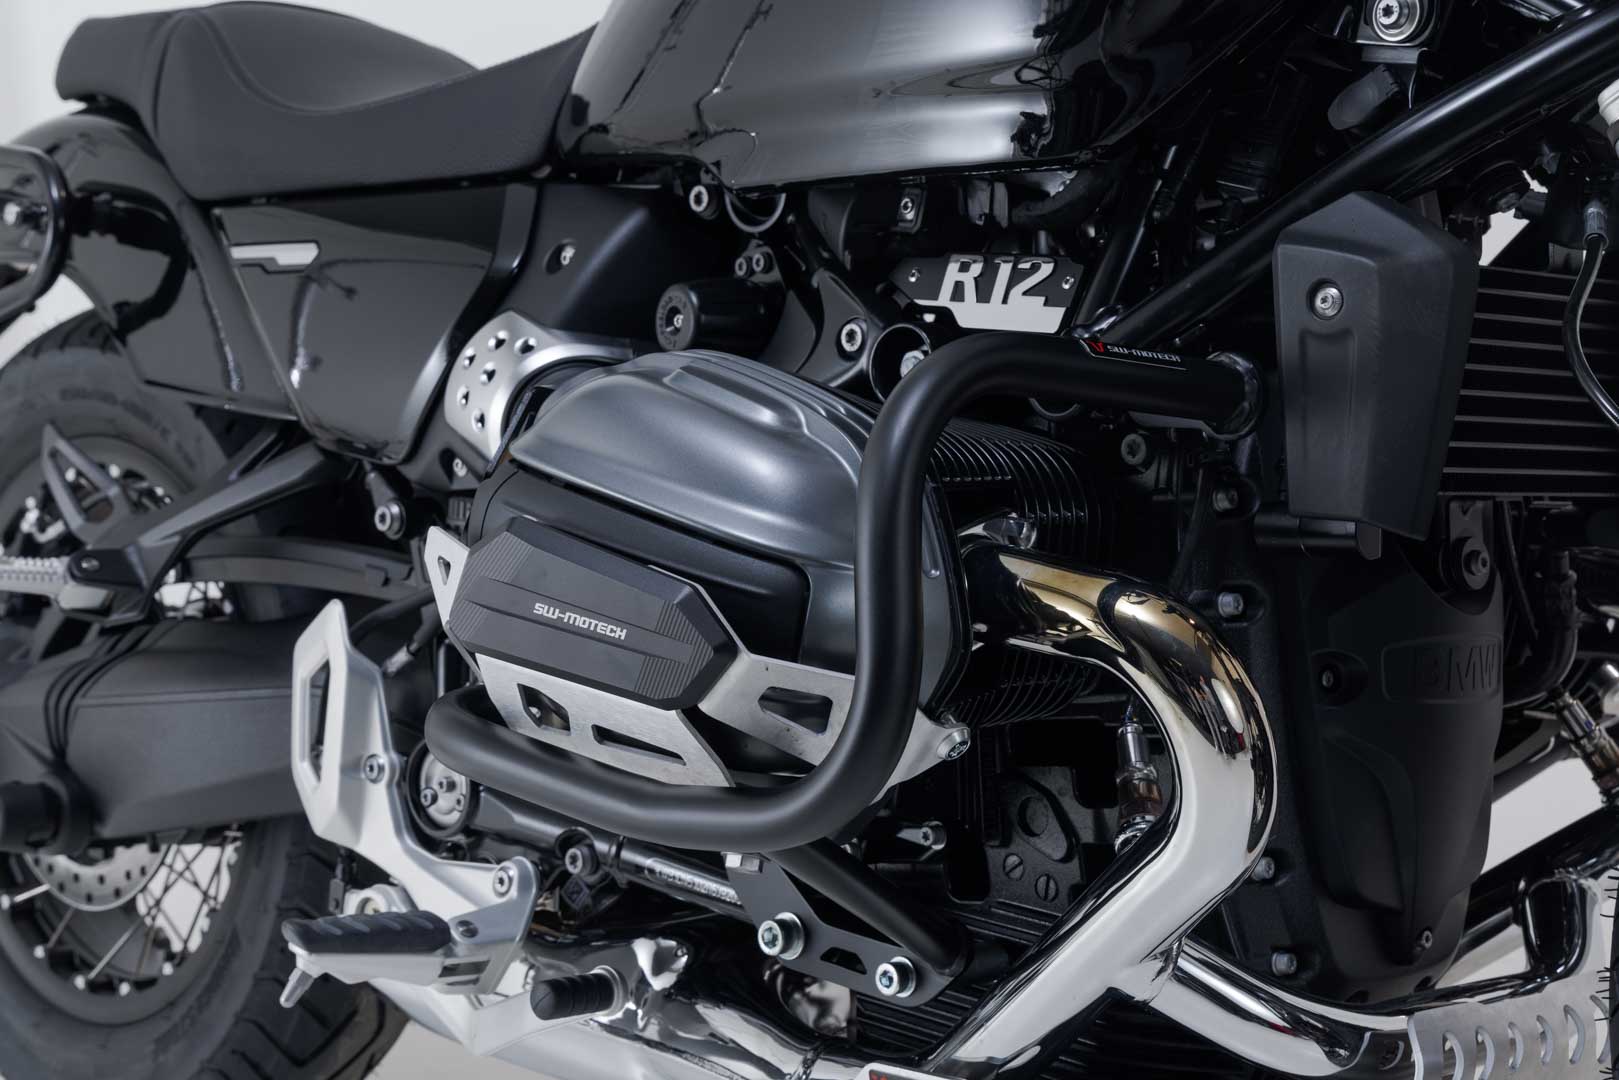 Protecciones laterales de motor Negro. BMW R12 / R12 nineT (23-).